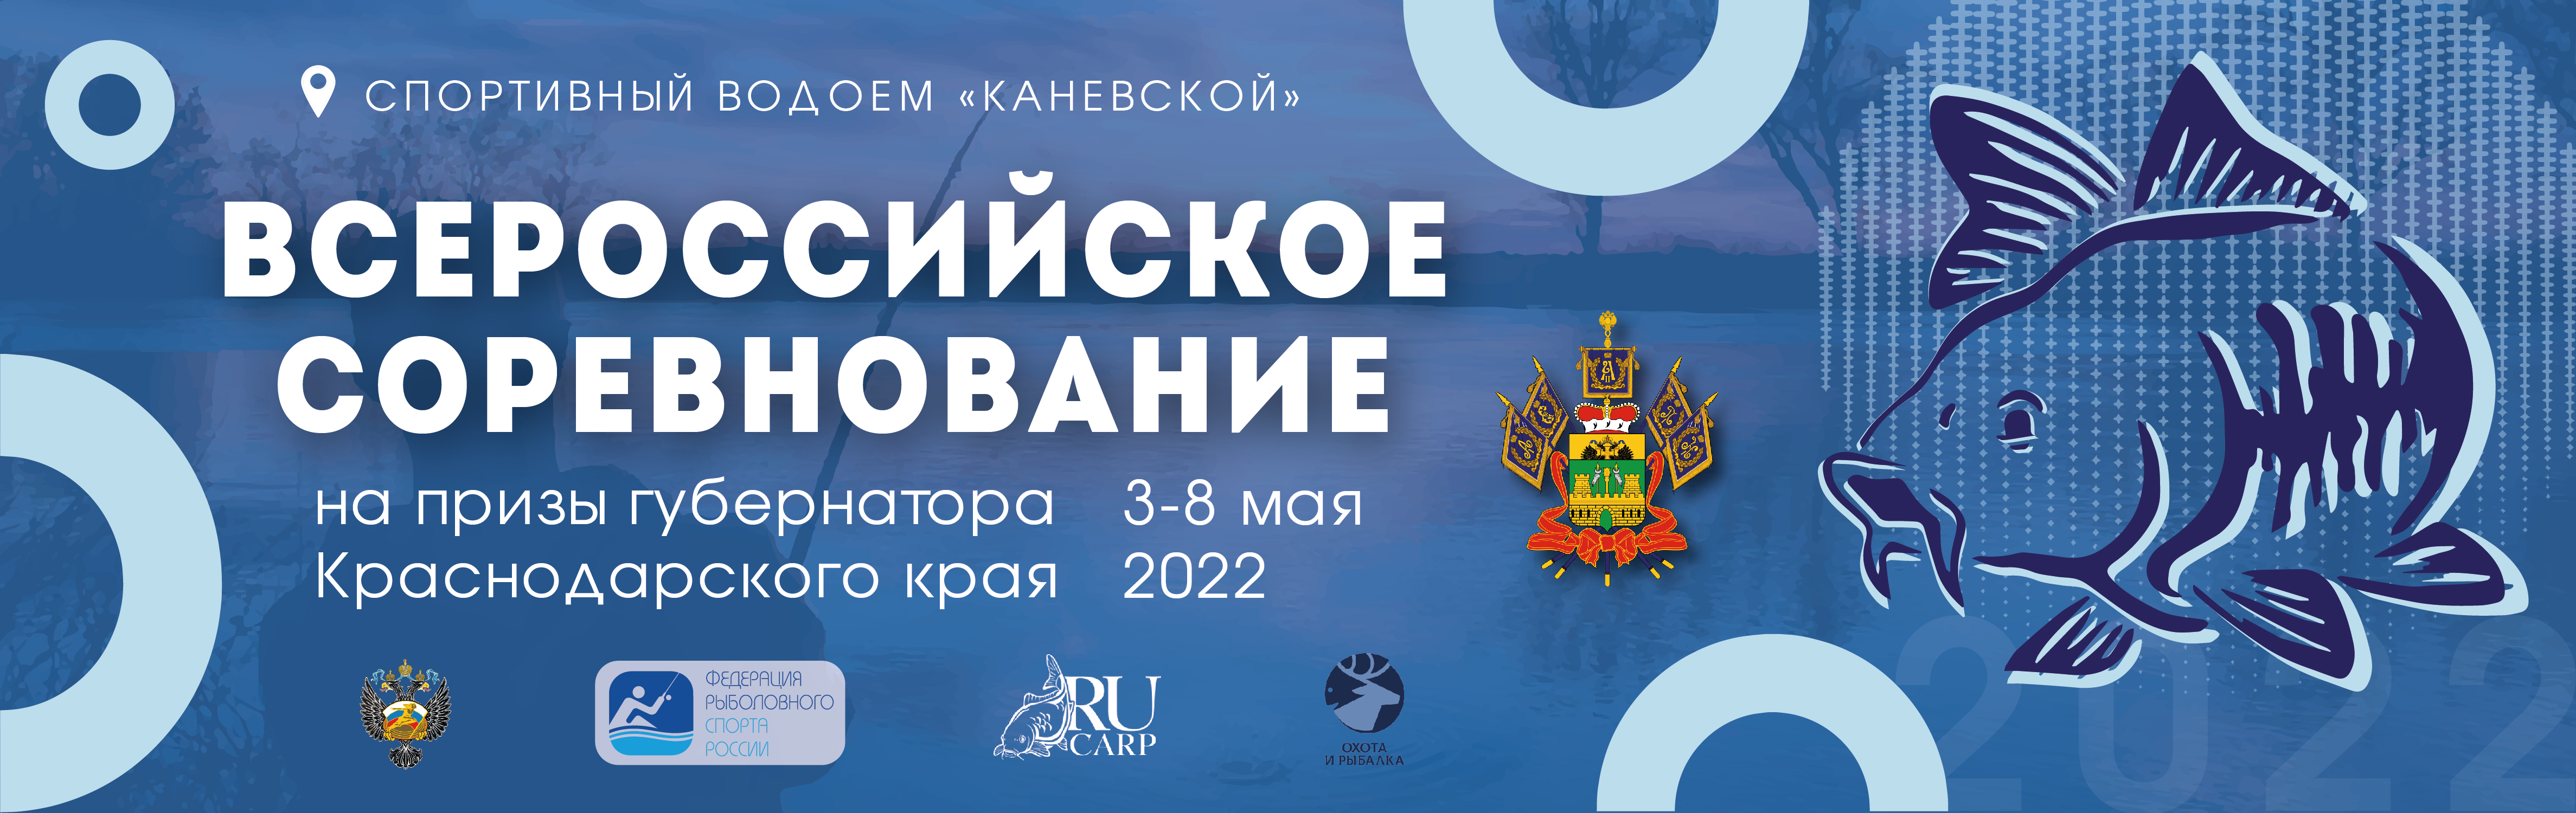 Всероссийское соревнование «На призы губернатора Краснодарского края -2022»